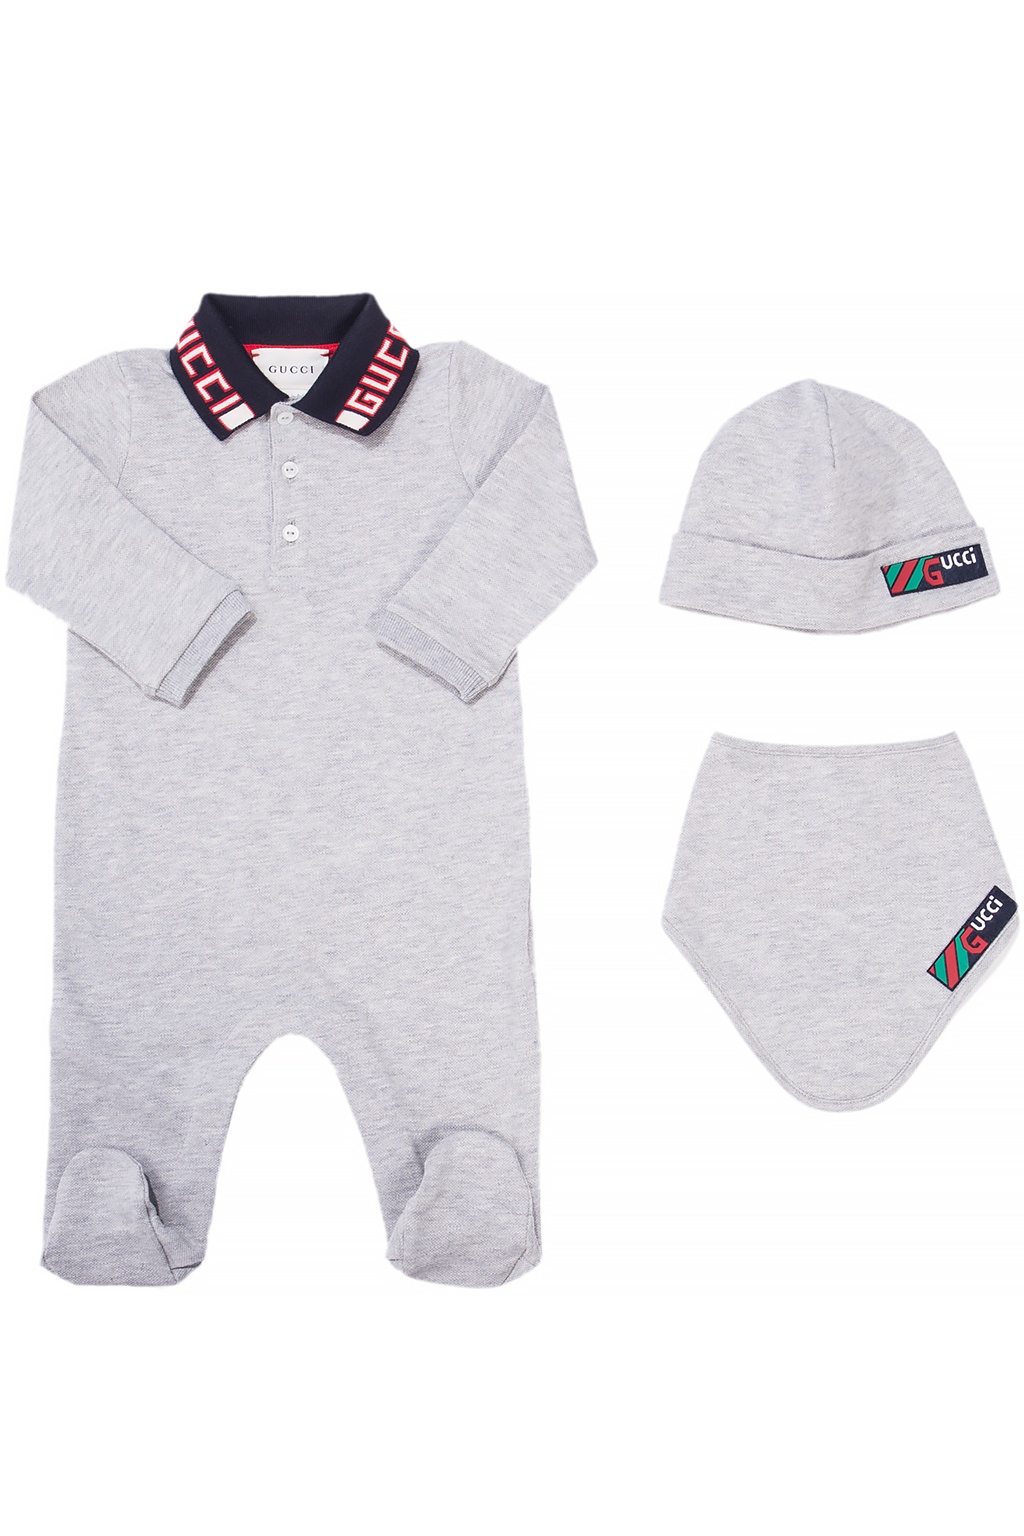 Gucci Kids Set: onesie, hat and bib | Kids's Baby (0-36 months) | Vitkac